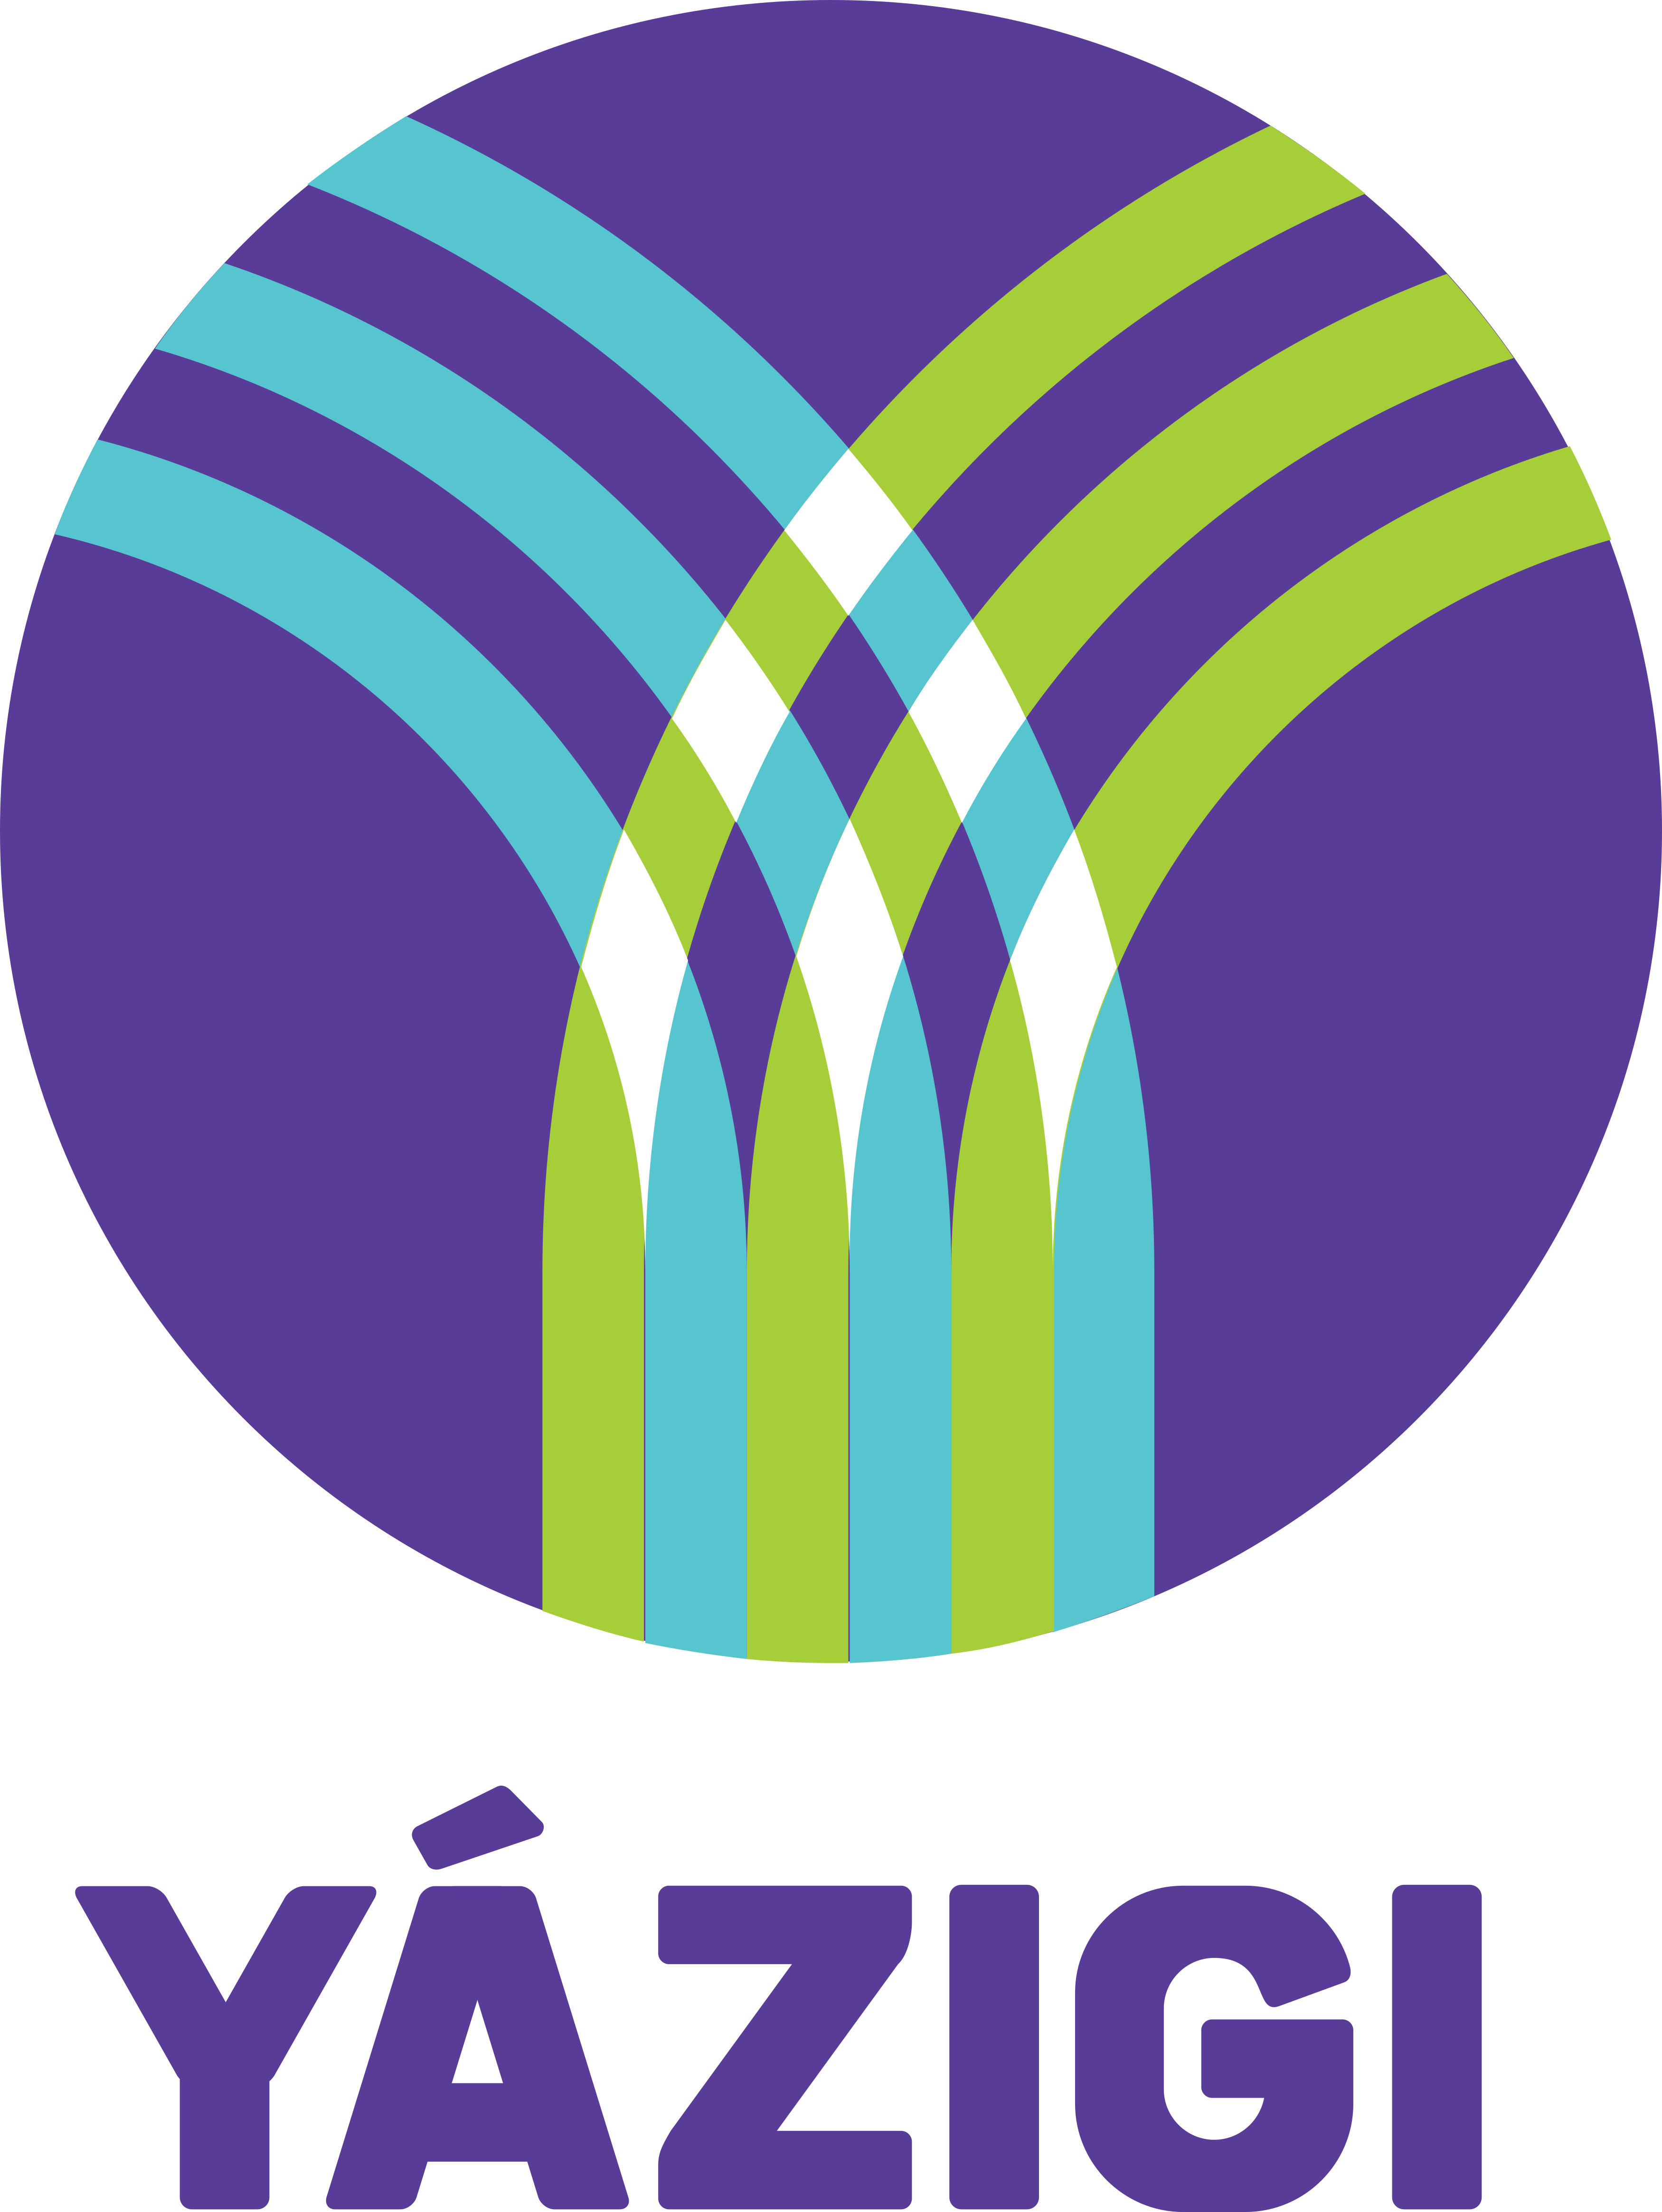 Yazigi Logo.